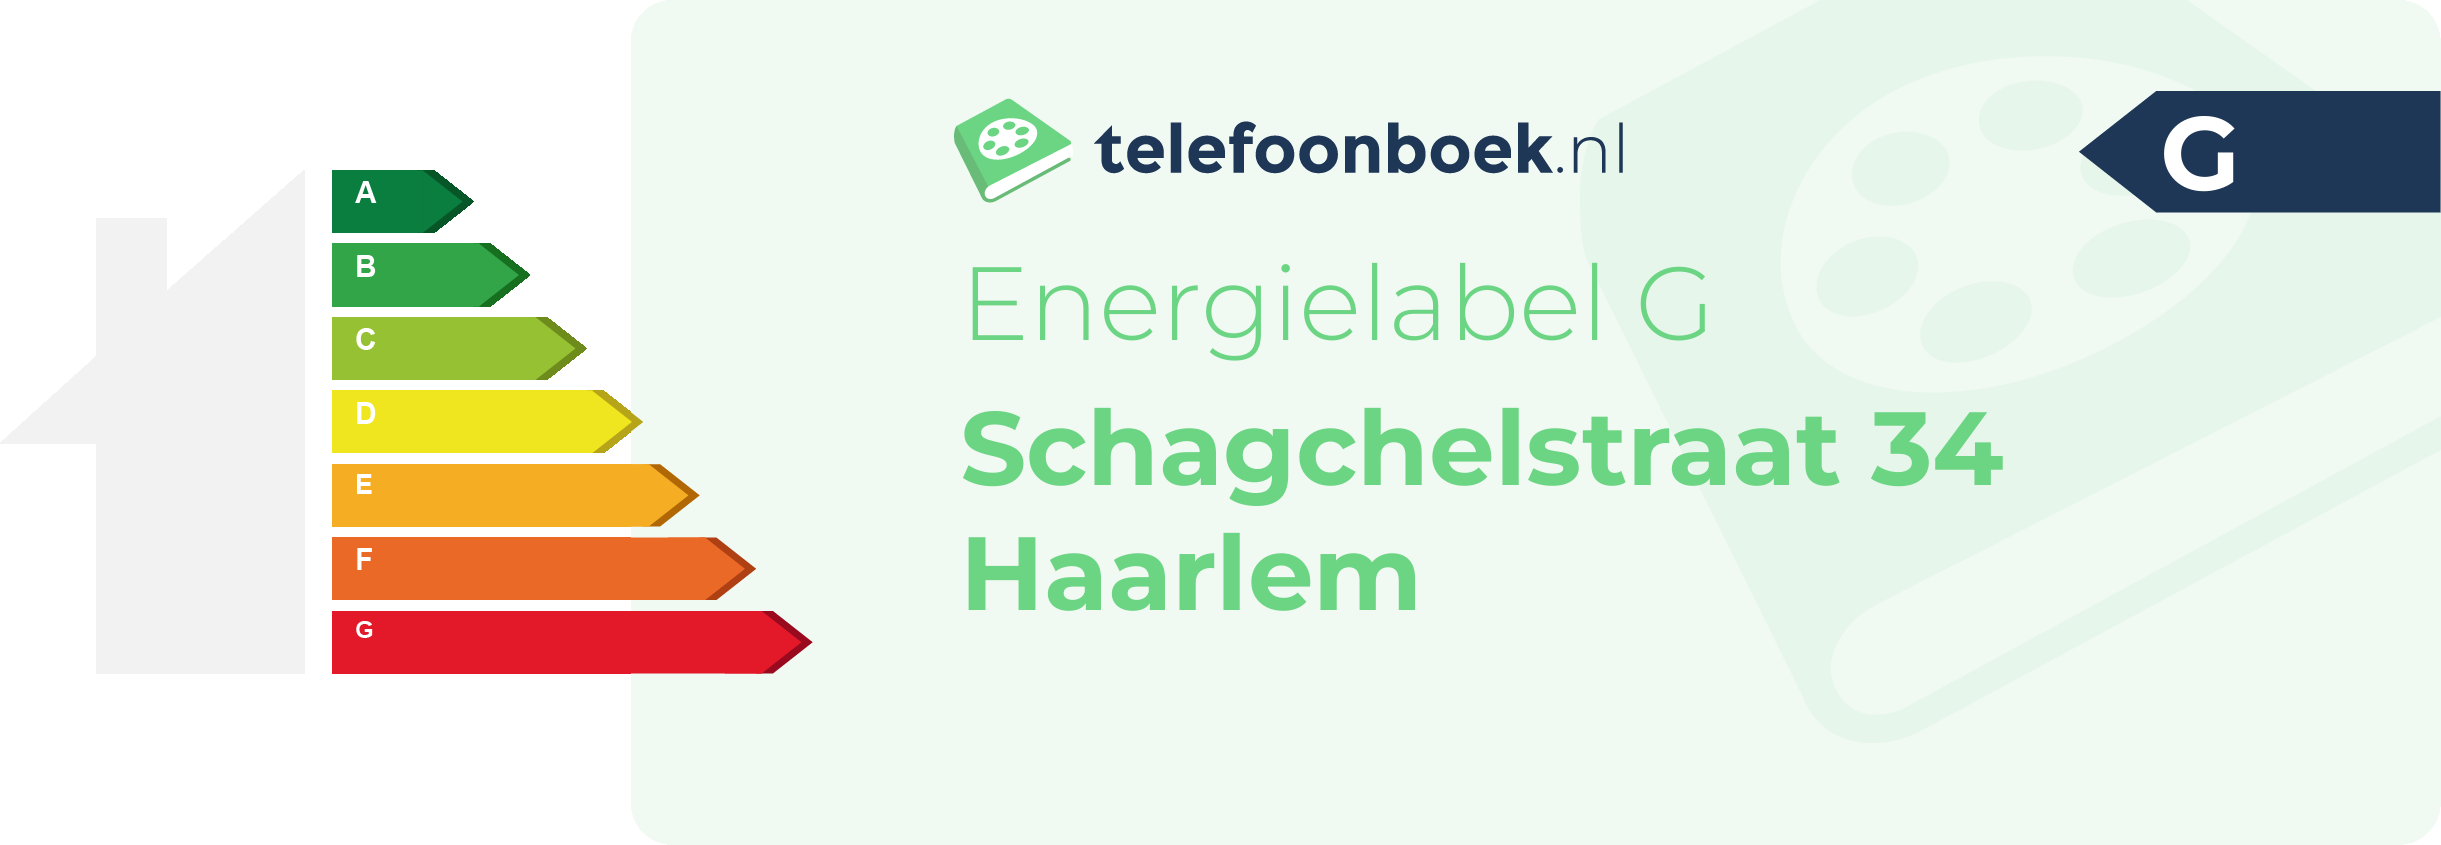 Energielabel Schagchelstraat 34 Haarlem